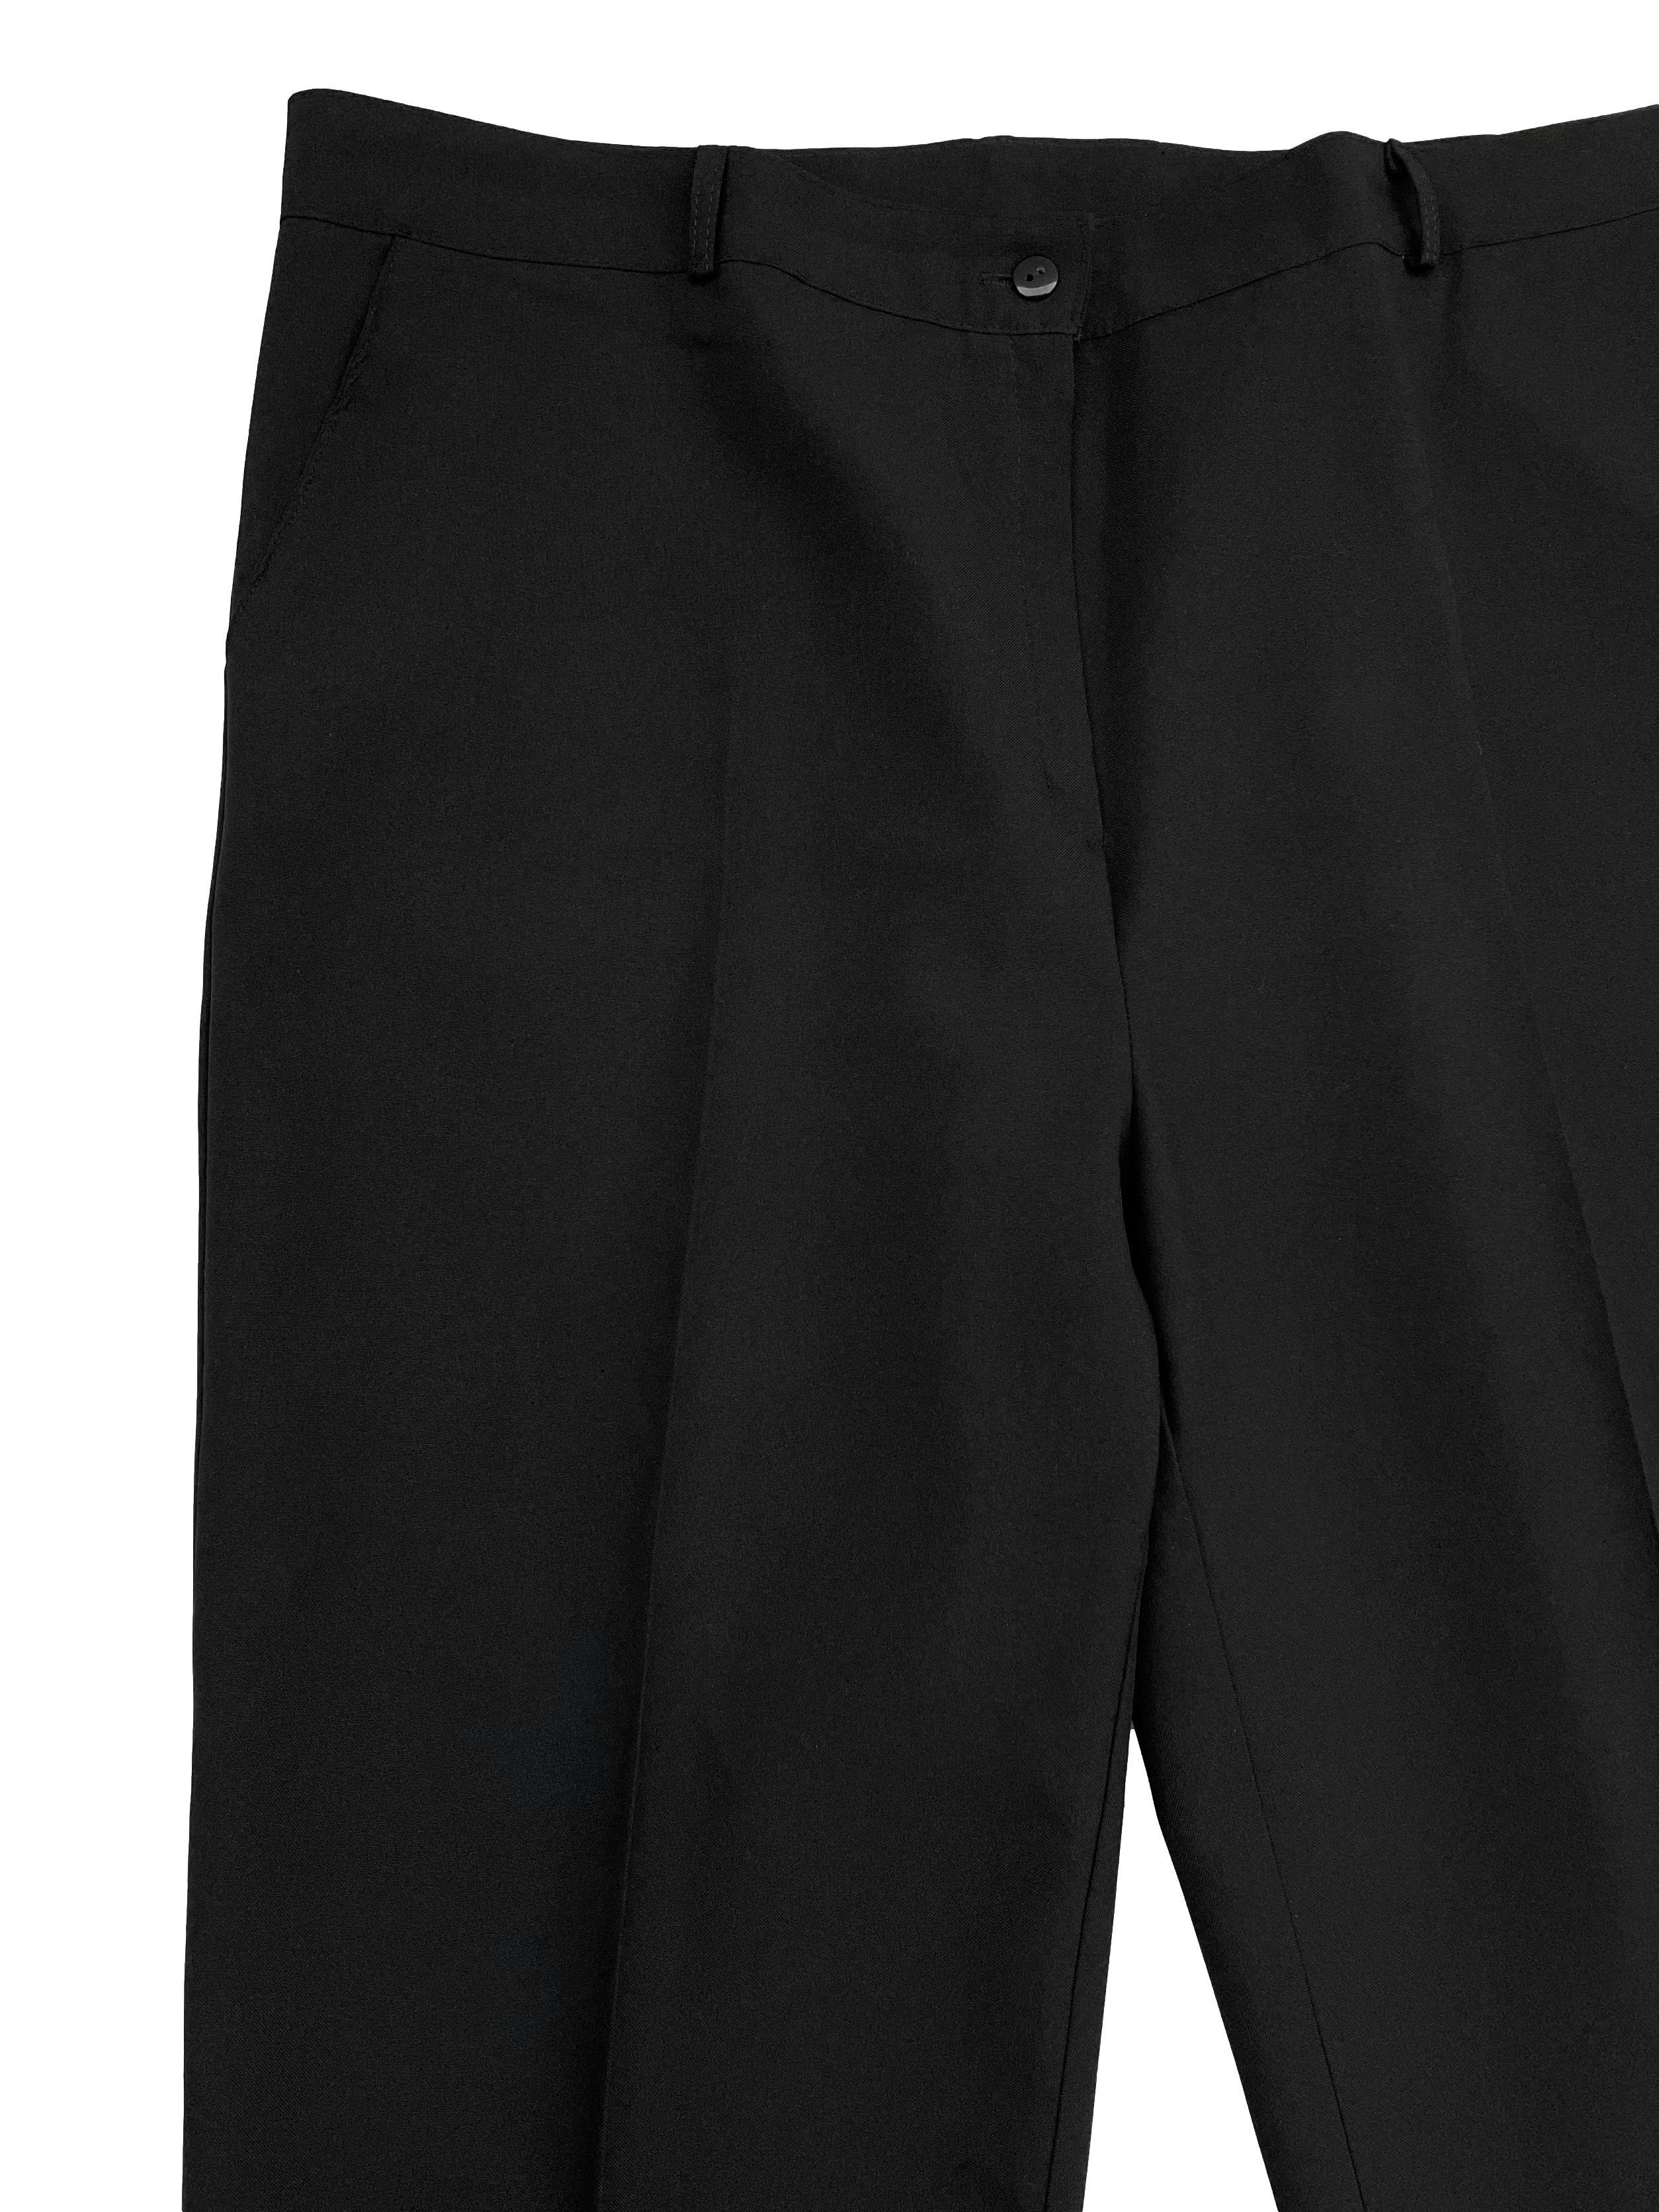 Pantalón negro a la cintura corte recto con bolsillos laterales y presillas.Tiro 32cm, Cintura 90cm, Largo 105cm.